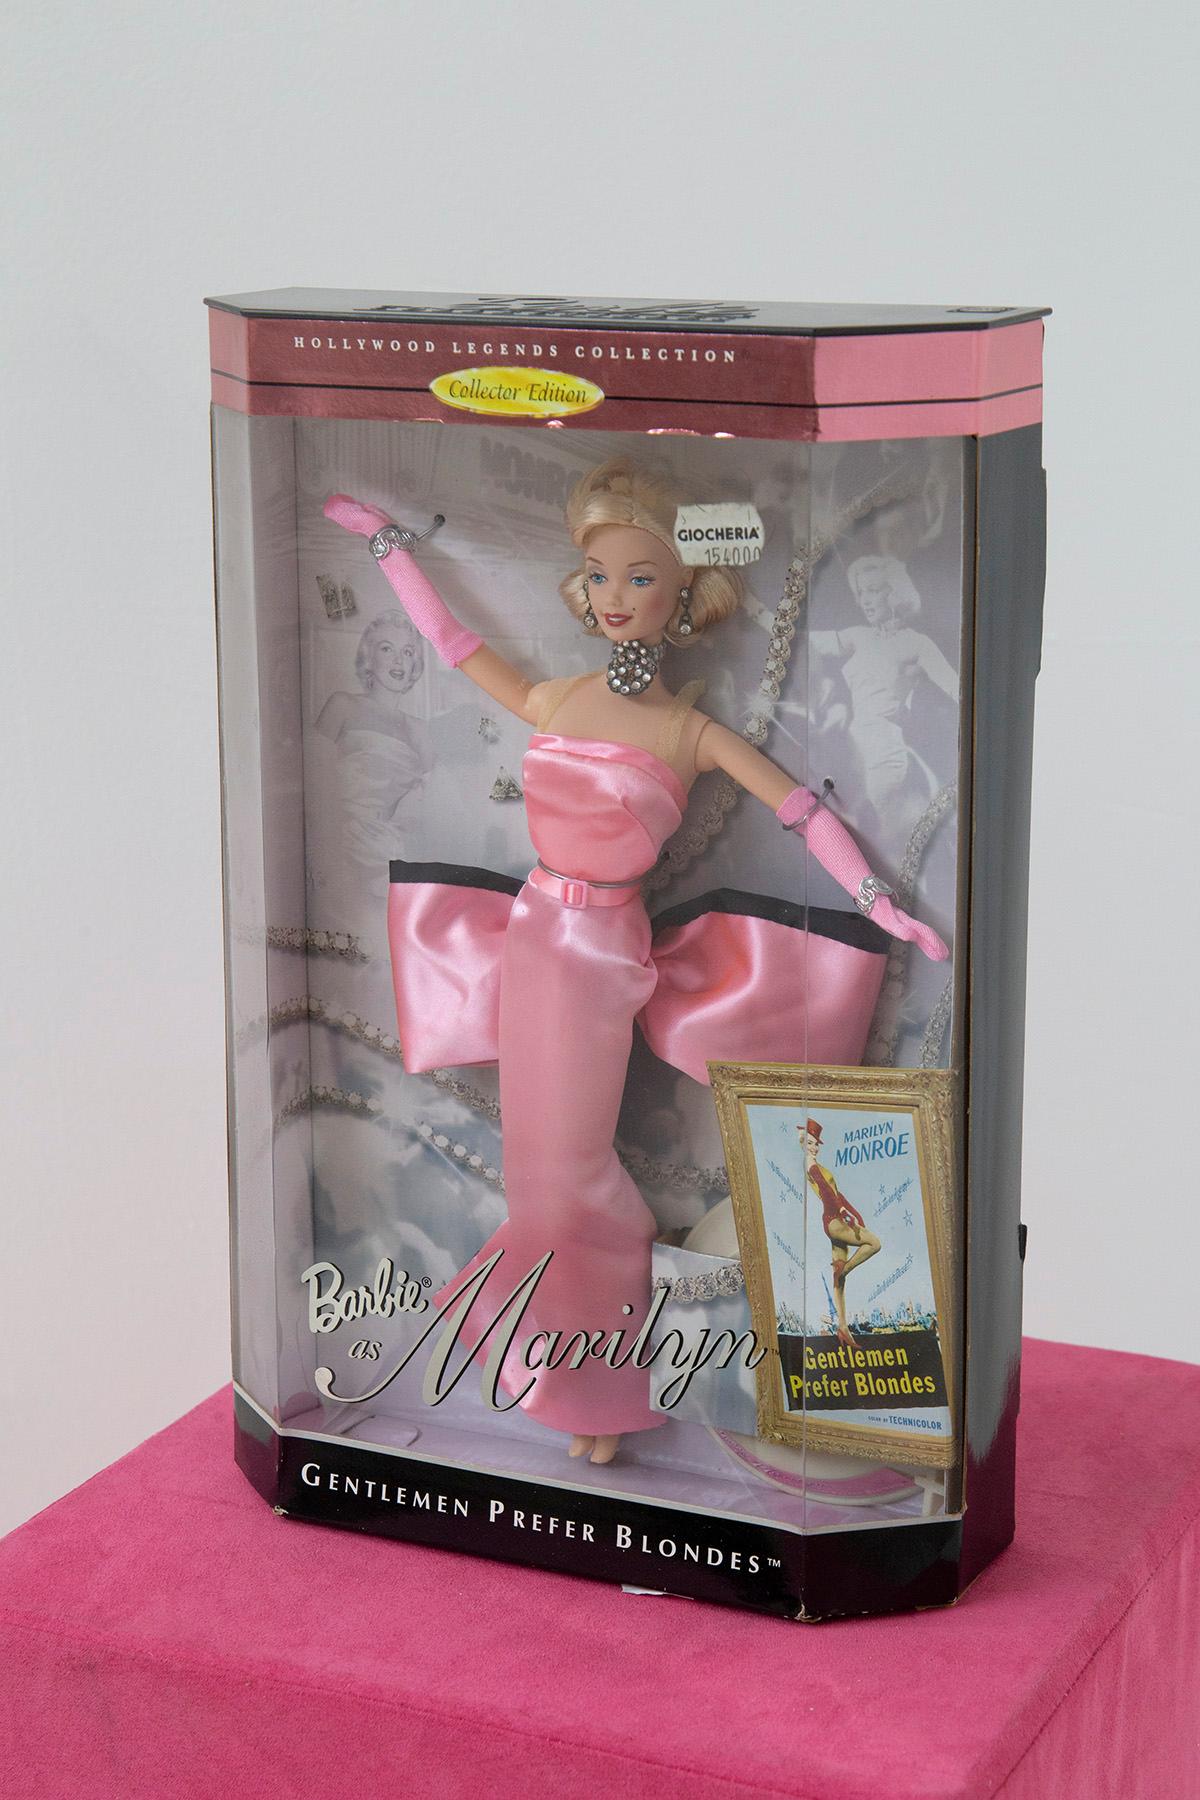 En 1997, une poupée Barbie a émergé des profondeurs de l'âge d'or d'Hollywood pour immortaliser l'un des moments les plus emblématiques de l'histoire du cinéma. Elle n'est autre que Barbie en Marilyn Monroe, un hommage éblouissant à l'actrice